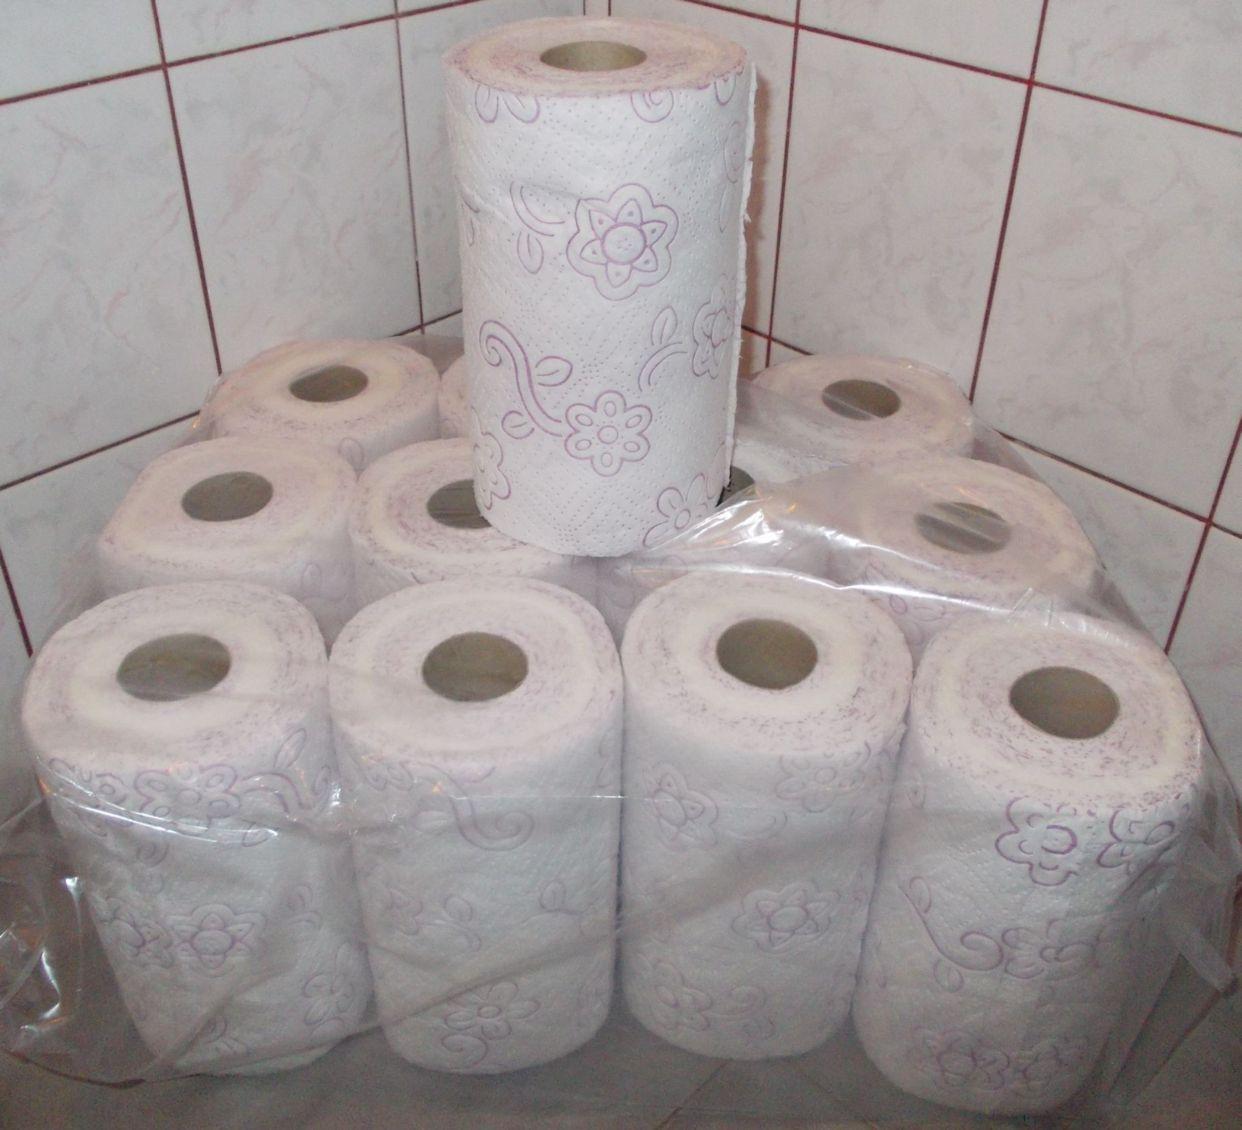 Papier toaletowy,reczniki papierowe,wielofunkcyjne, Kraków, małopolskie